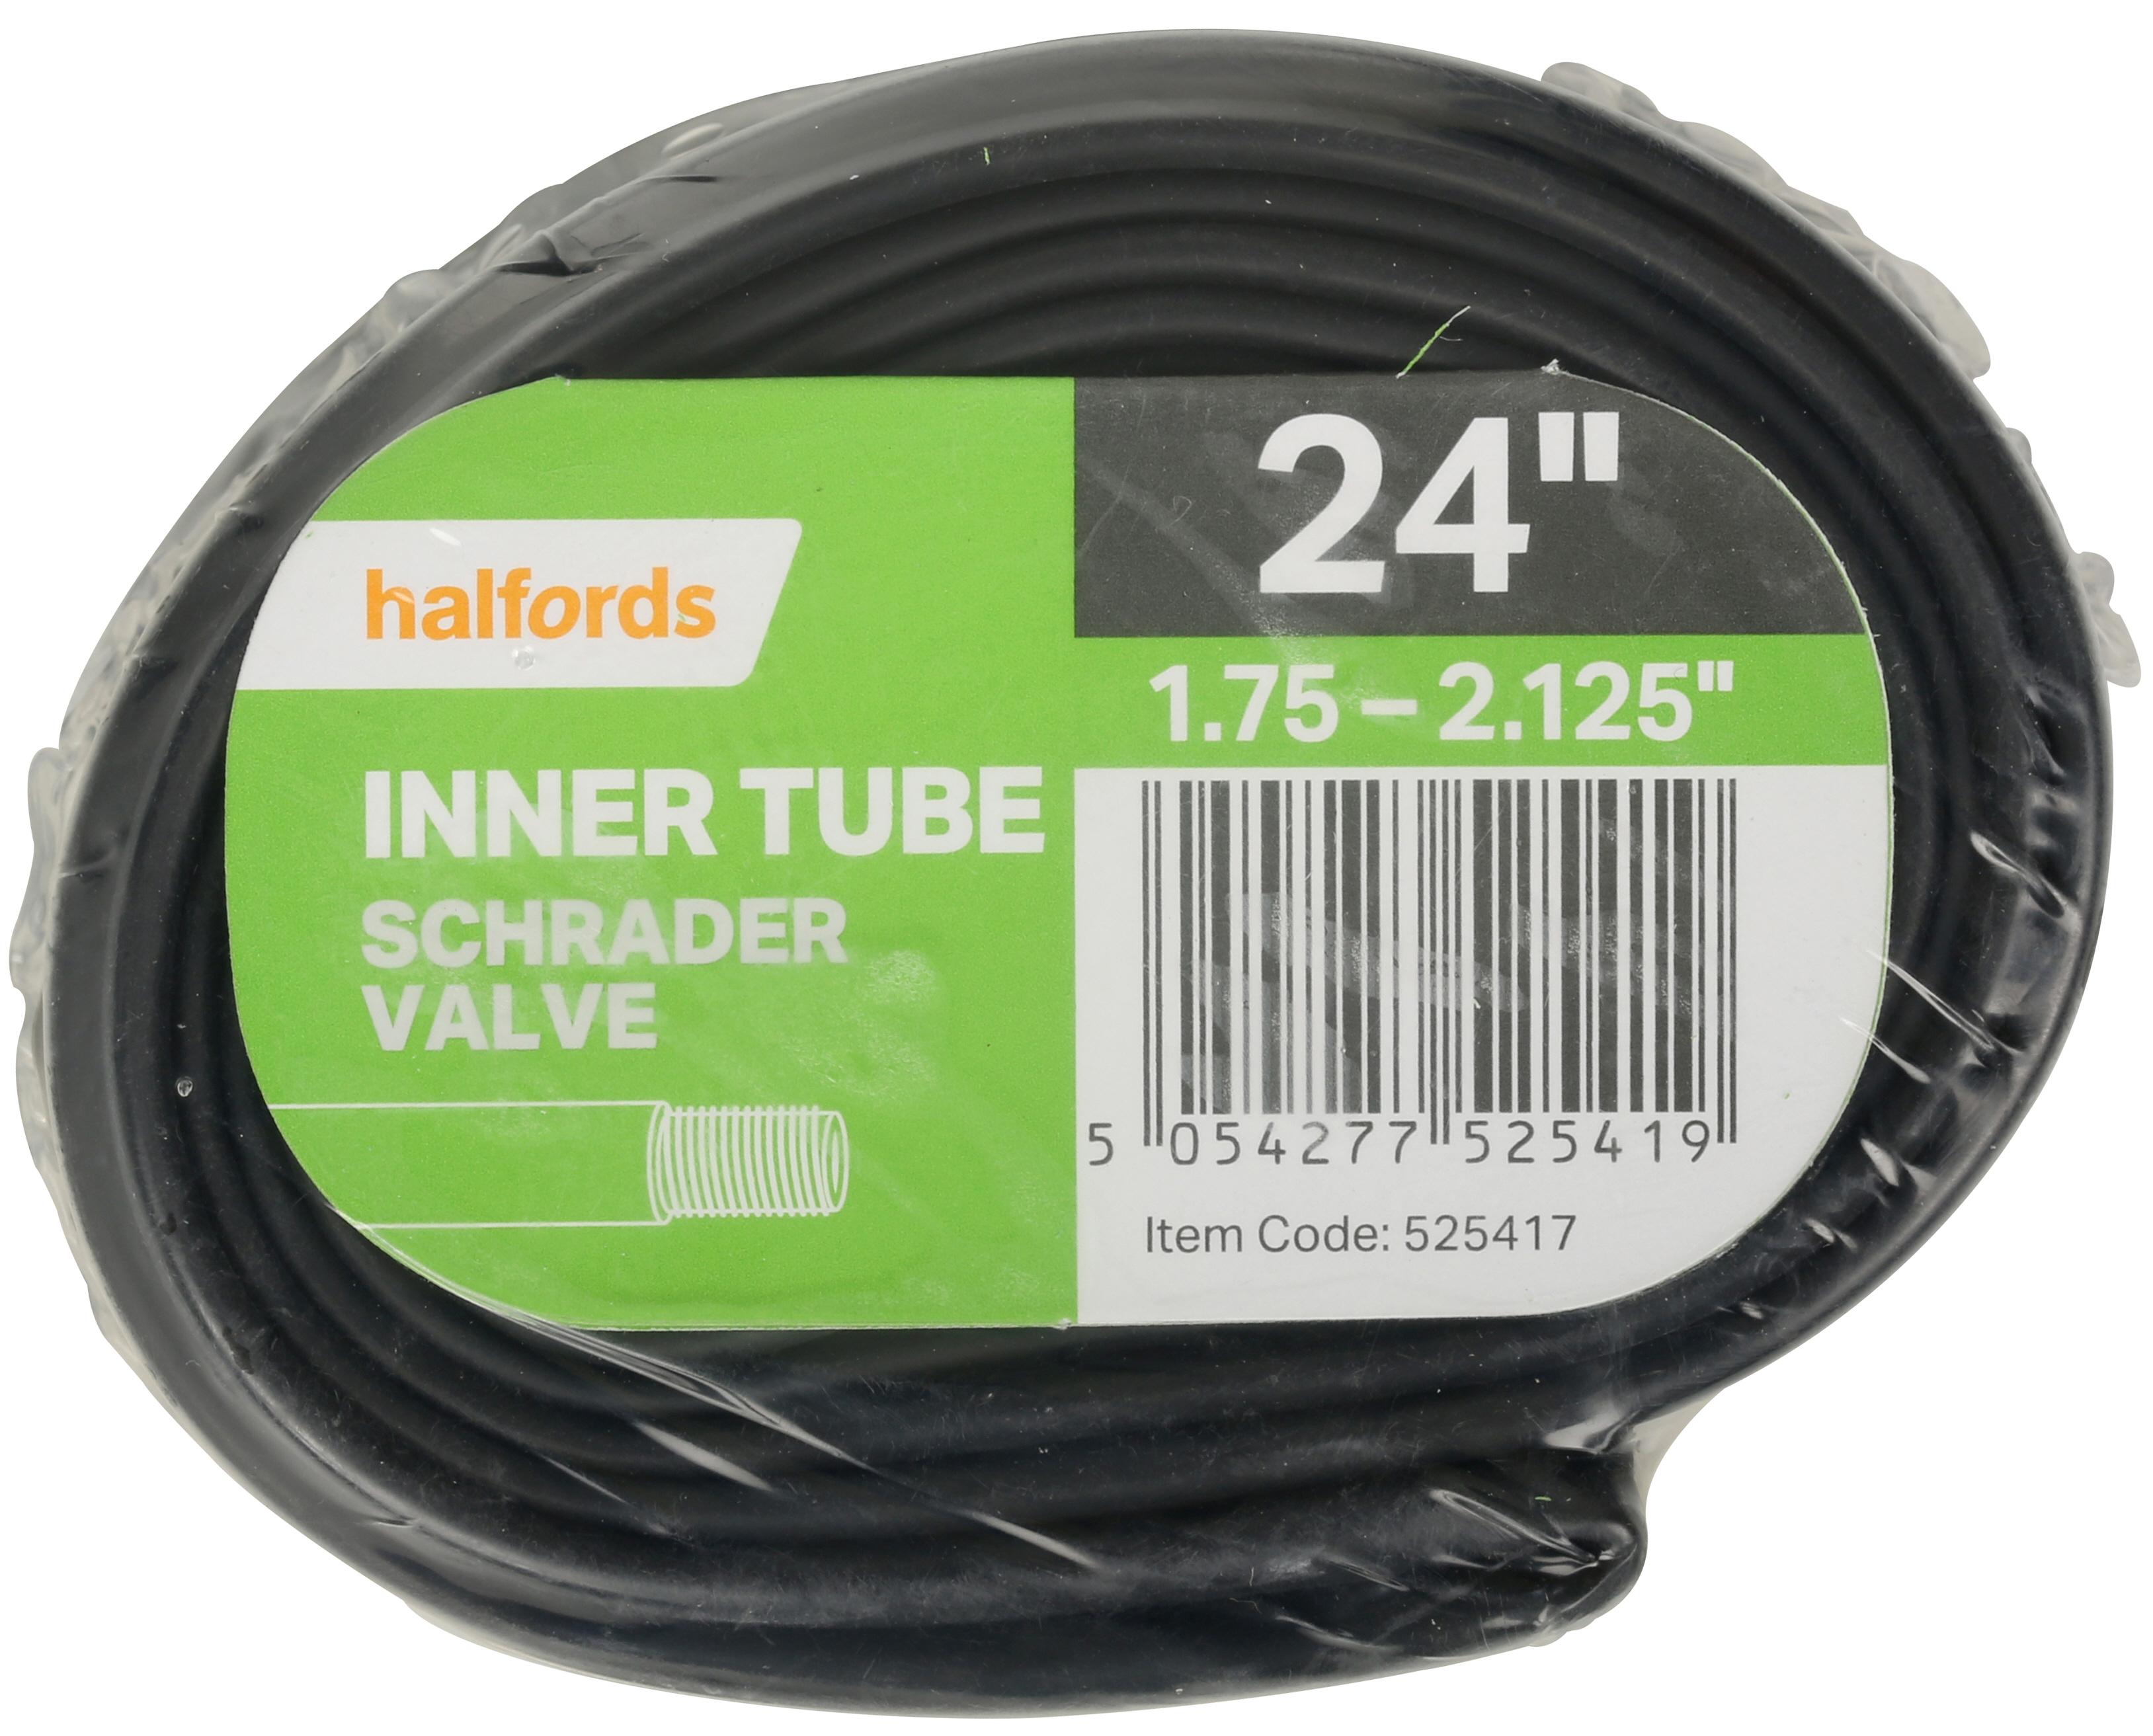 Halfords Bike Inner Tube, 24 Inch X 1.75 - 2.125 Inch, Schrader